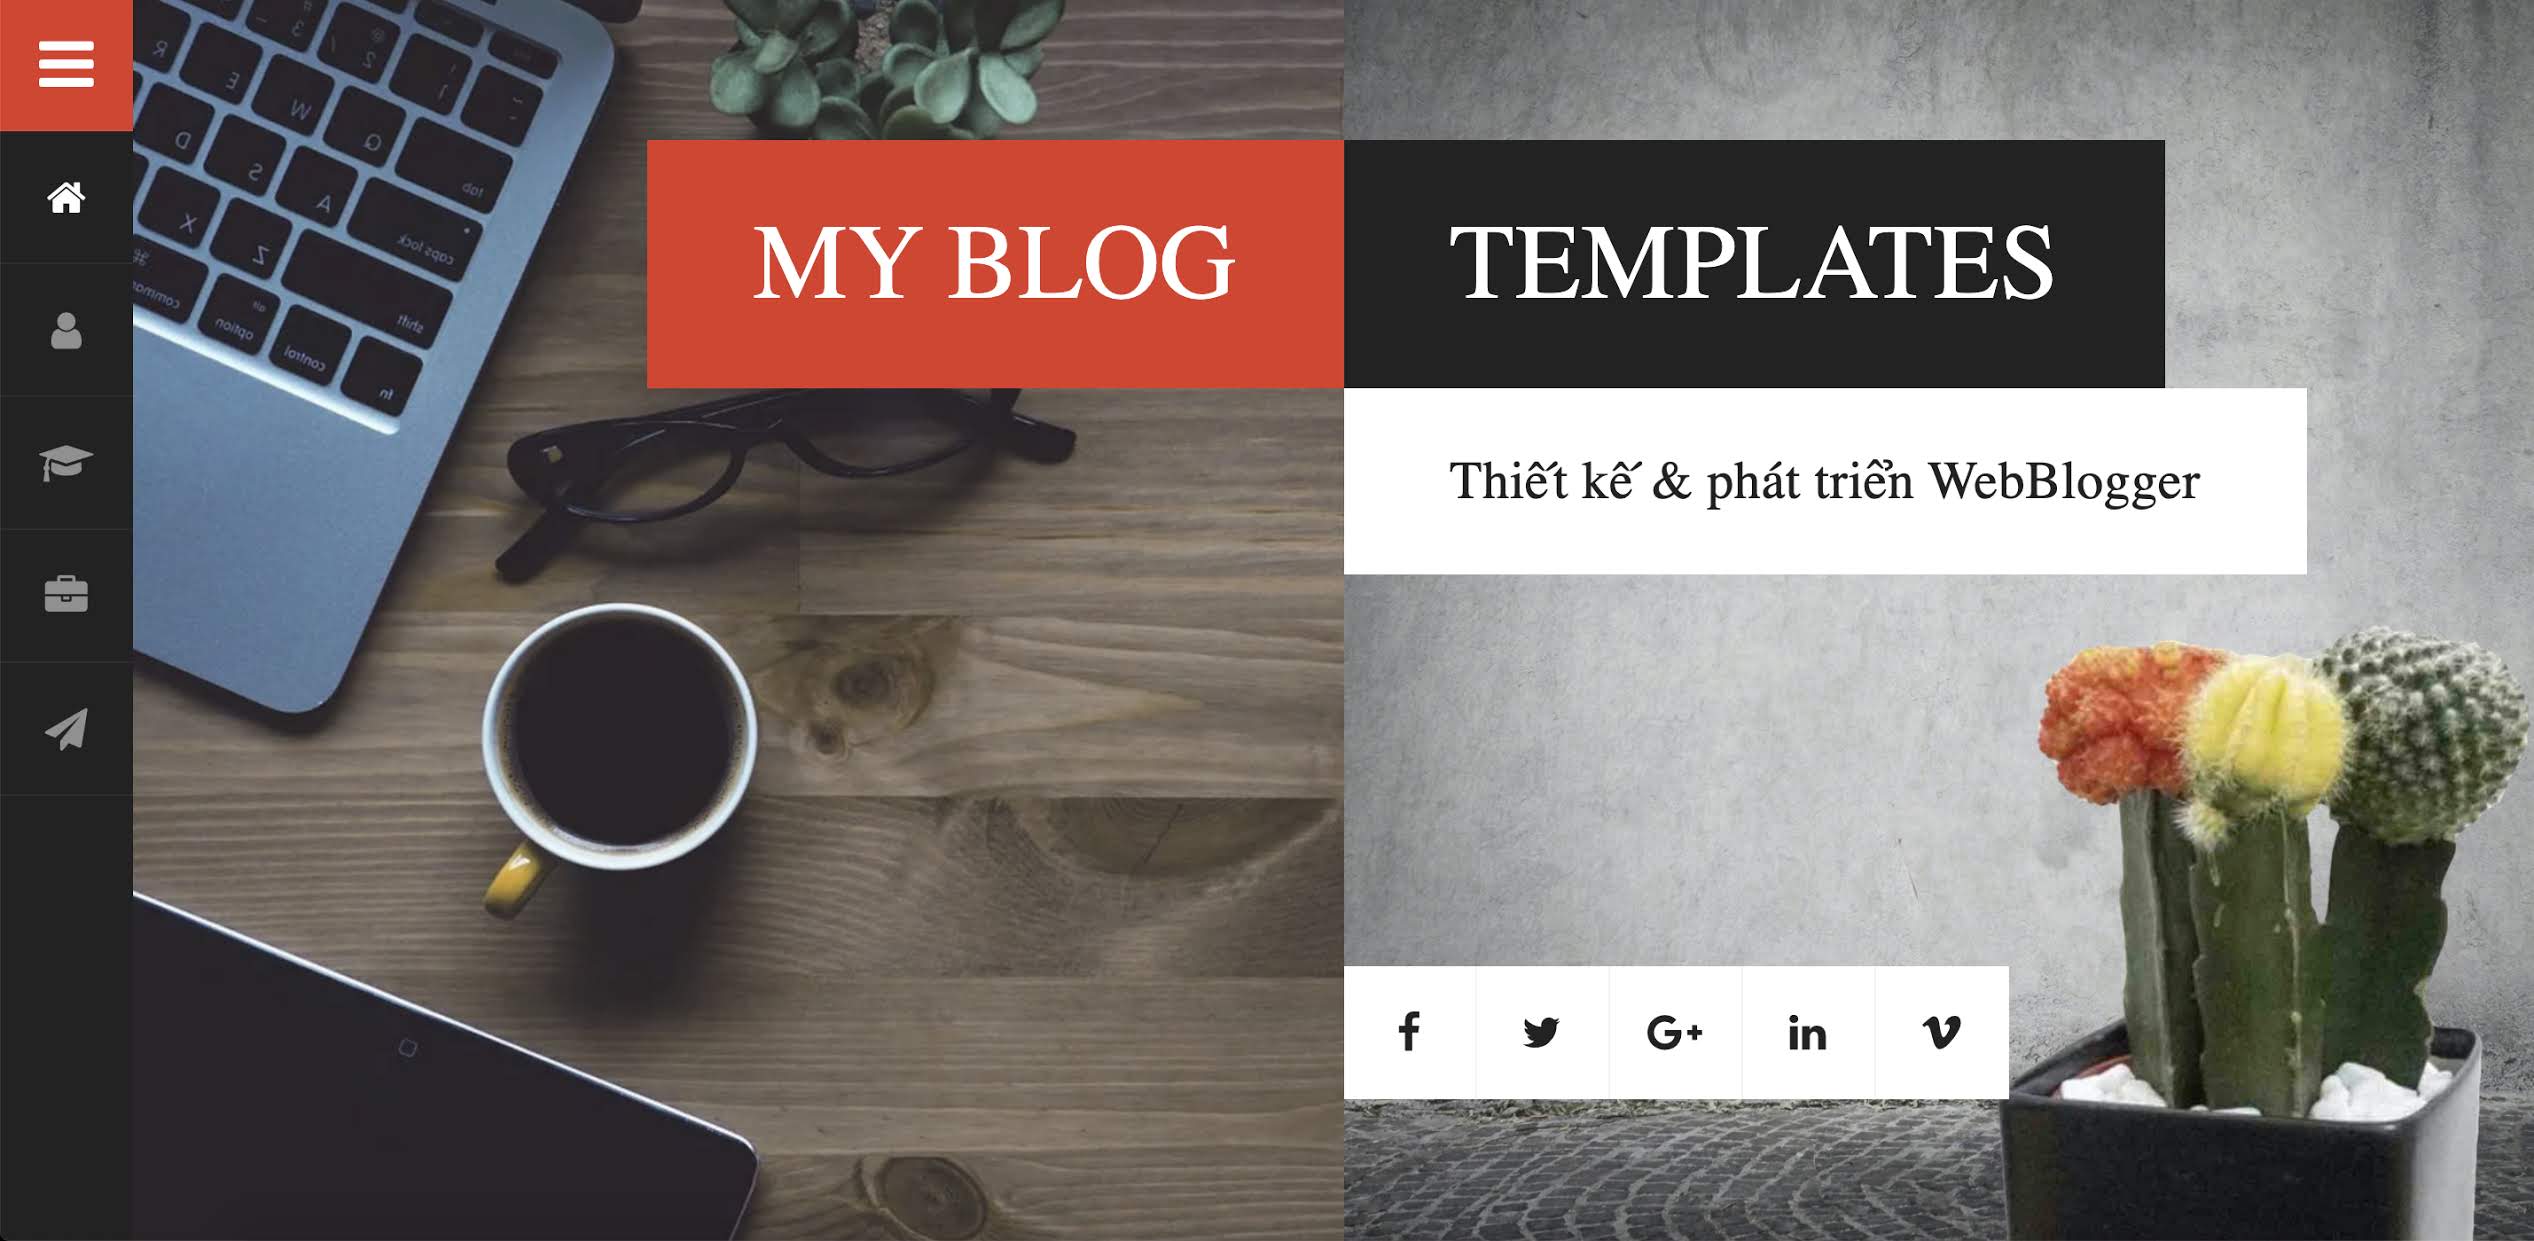 Template tin tức, dịch vụ, cá nhân cho Blogger / Blogspot